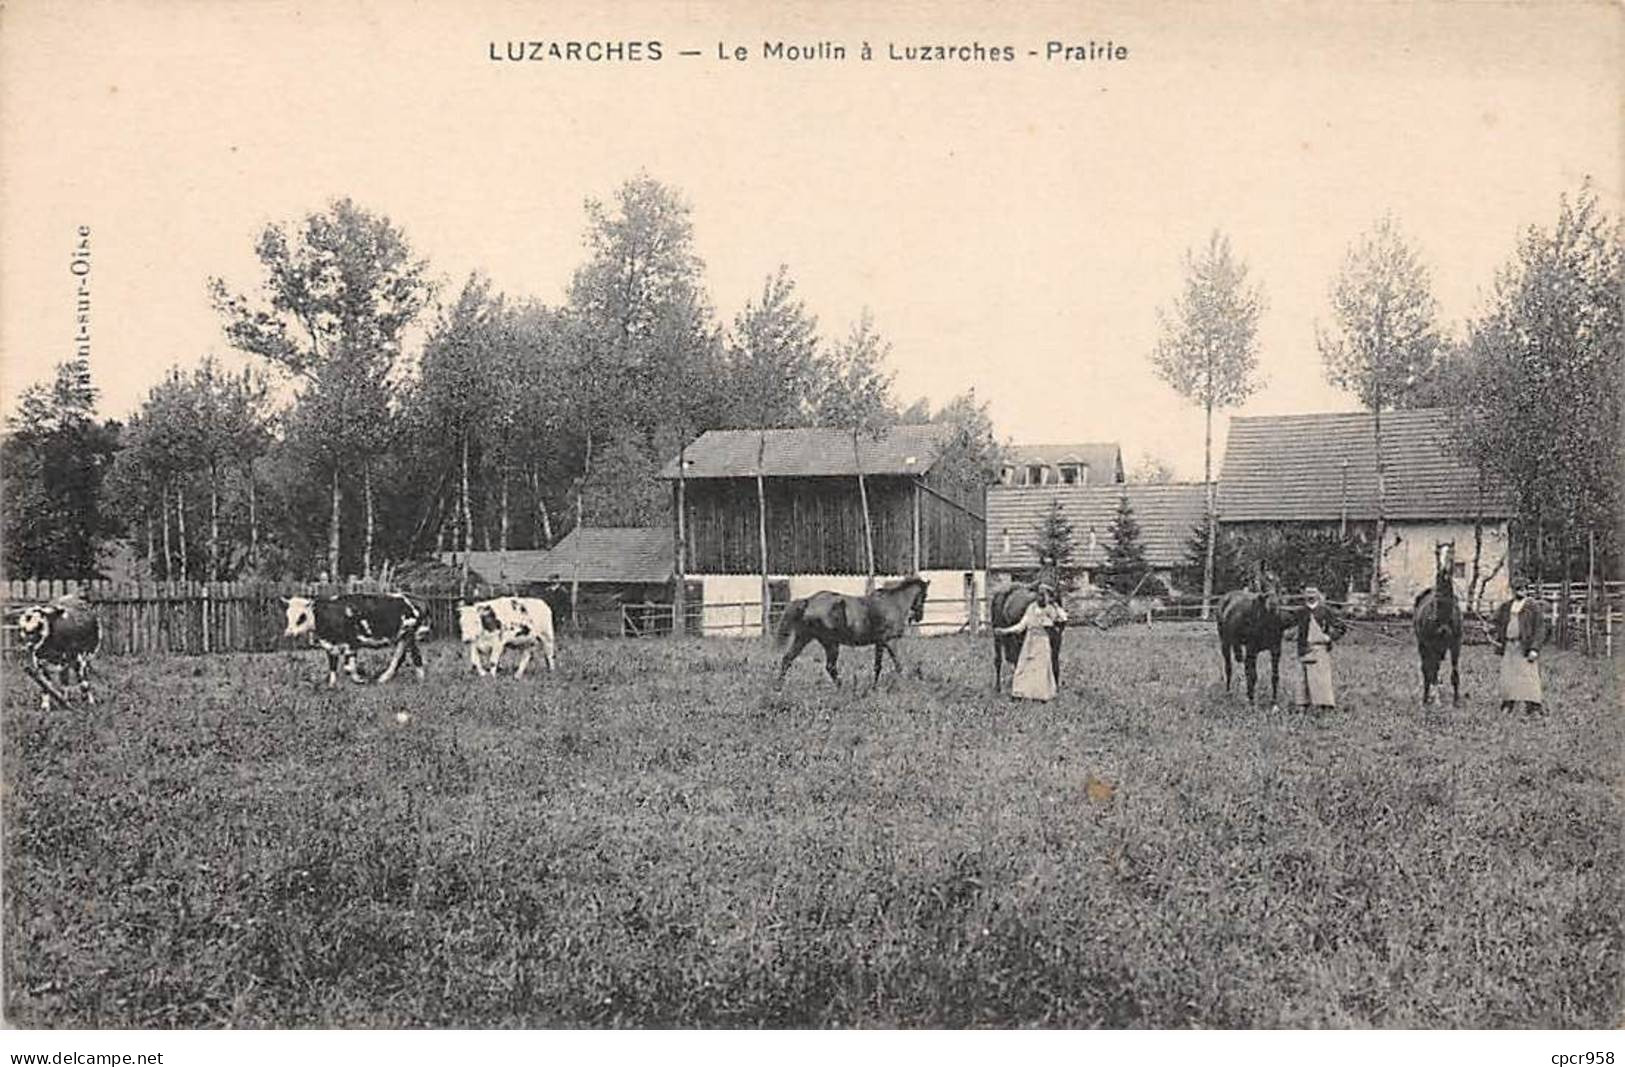 95 - LUZARCHES - SAN25087 - Le Moulin - Prairie - Luzarches